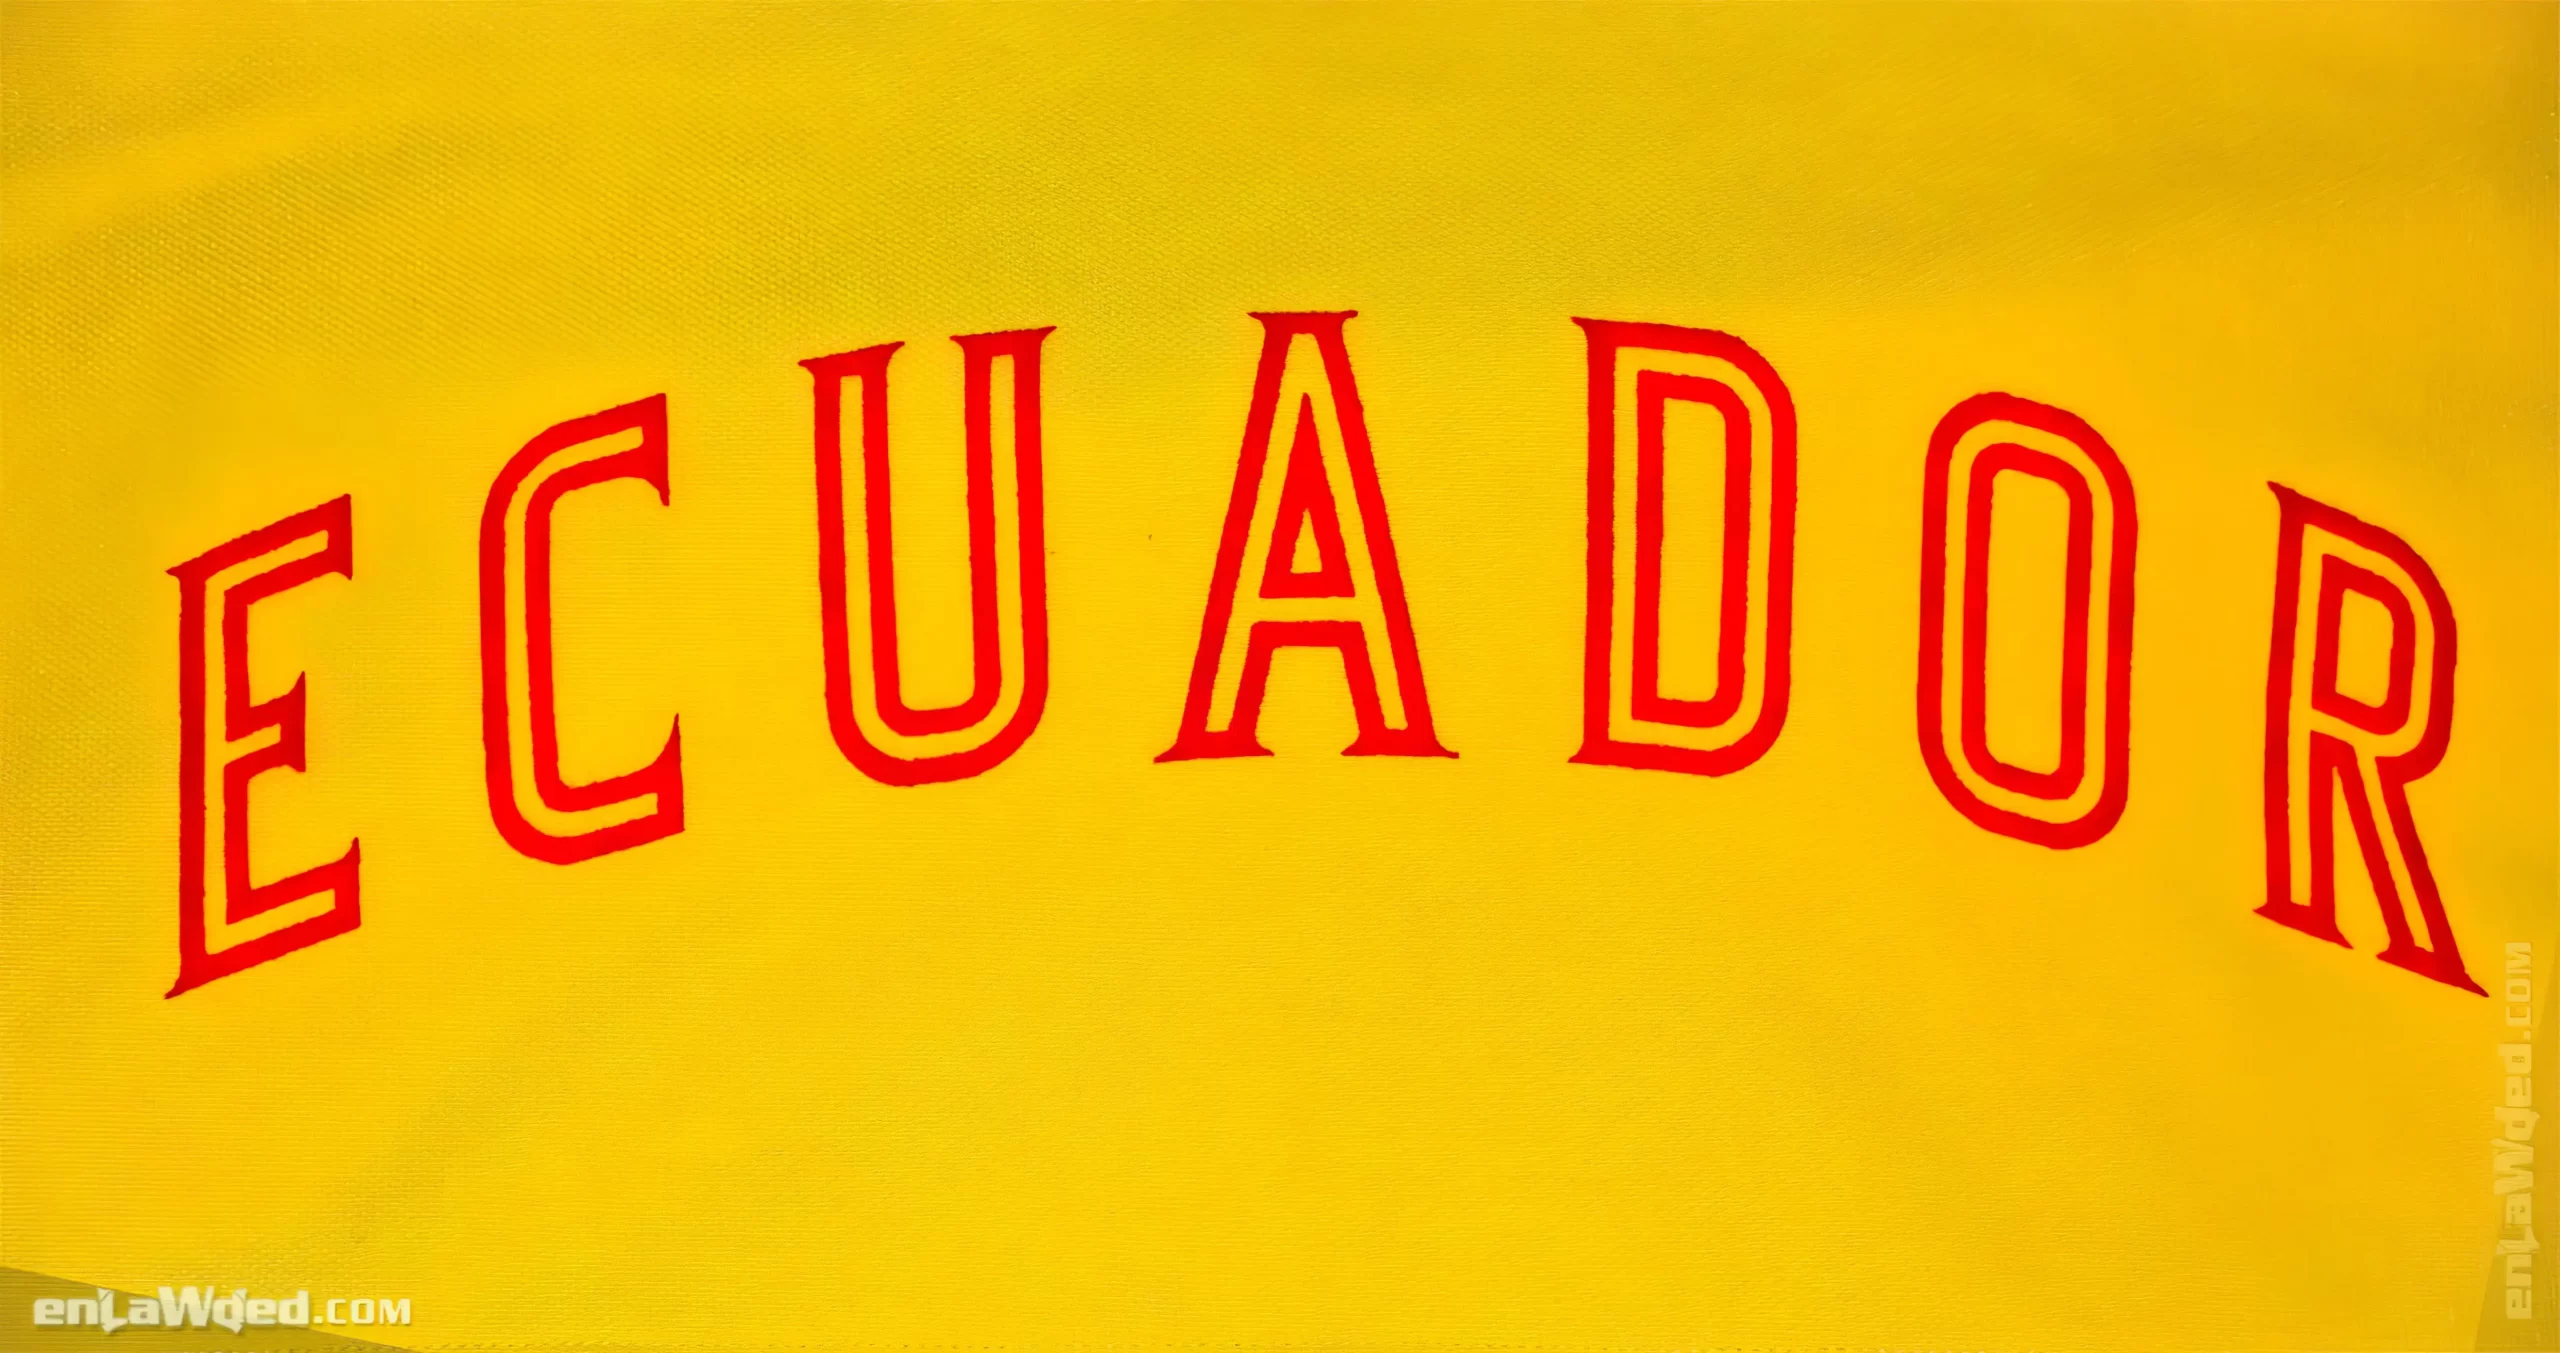 Men’s 2006 Ecuador Track Top by Adidas Originals: Superb (EnLawded.com file #lmchk90170ip2y121975kg9st)